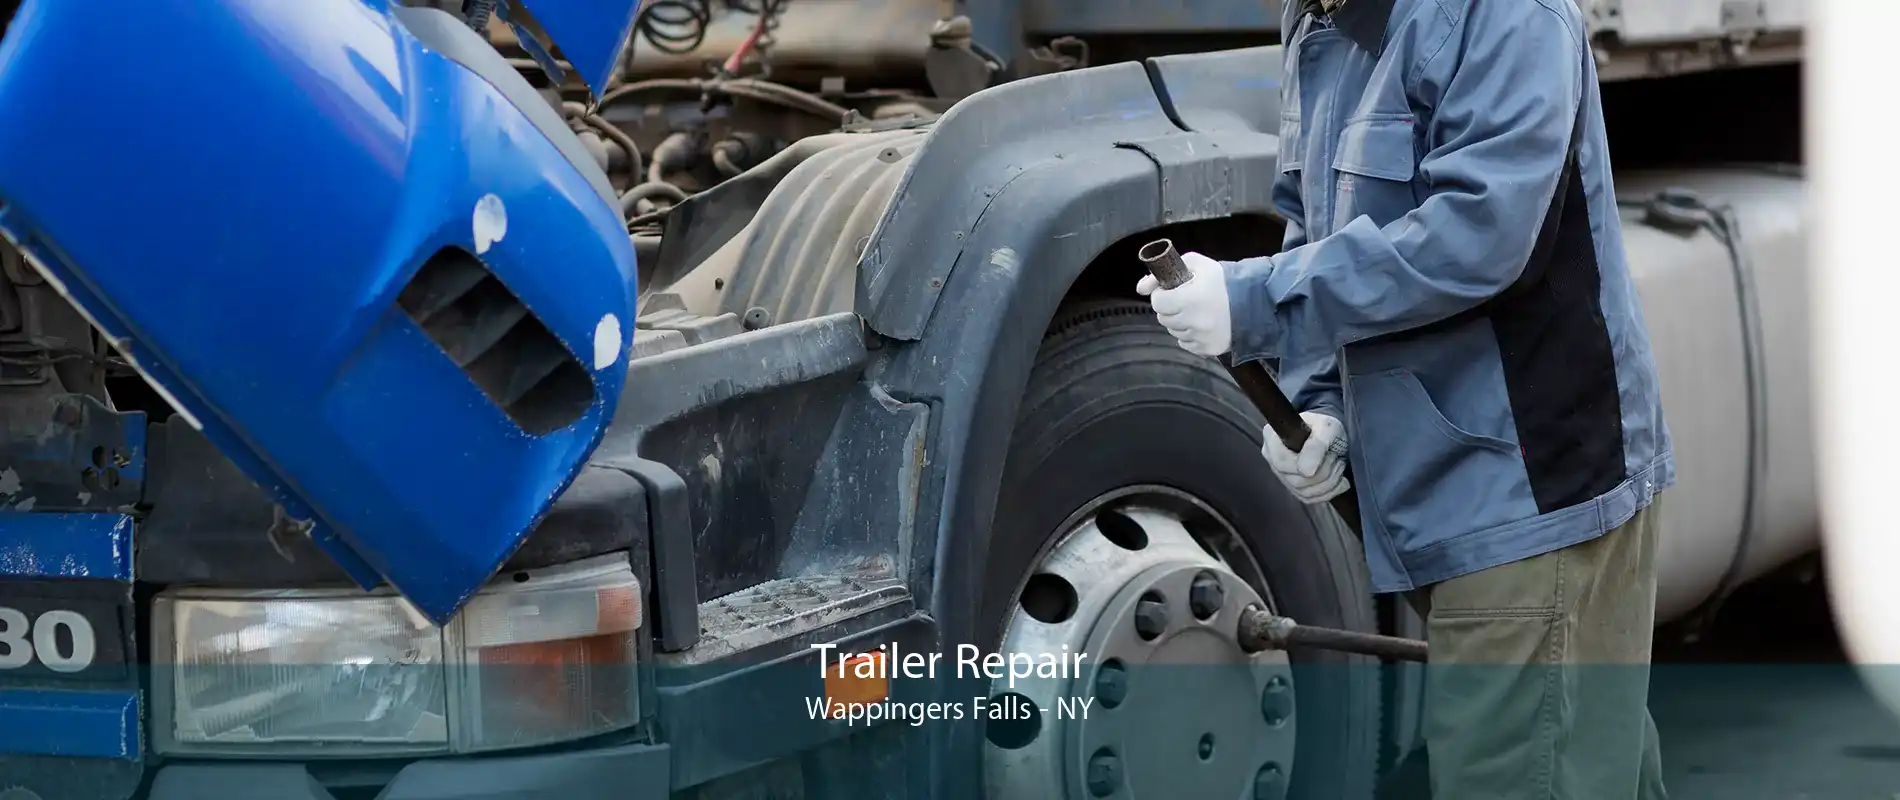 Trailer Repair Wappingers Falls - NY